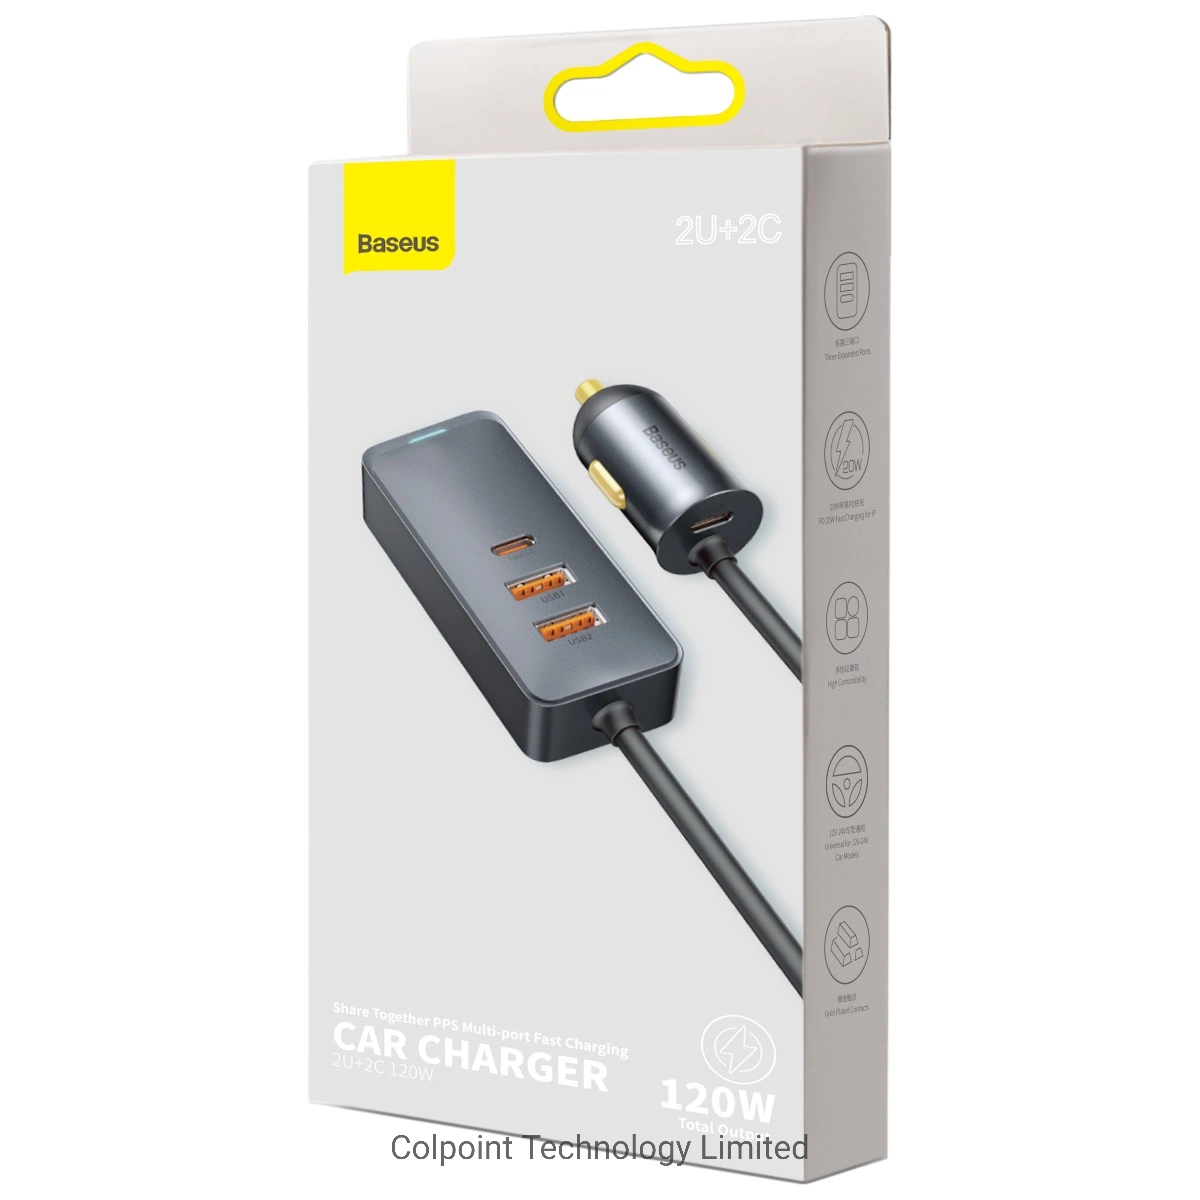 Baseus partager PPS 120W cordon de chargement rapide multiport 3 Adaptateur USB + chargeur de voiture de type C avec câble de 1,5 M.